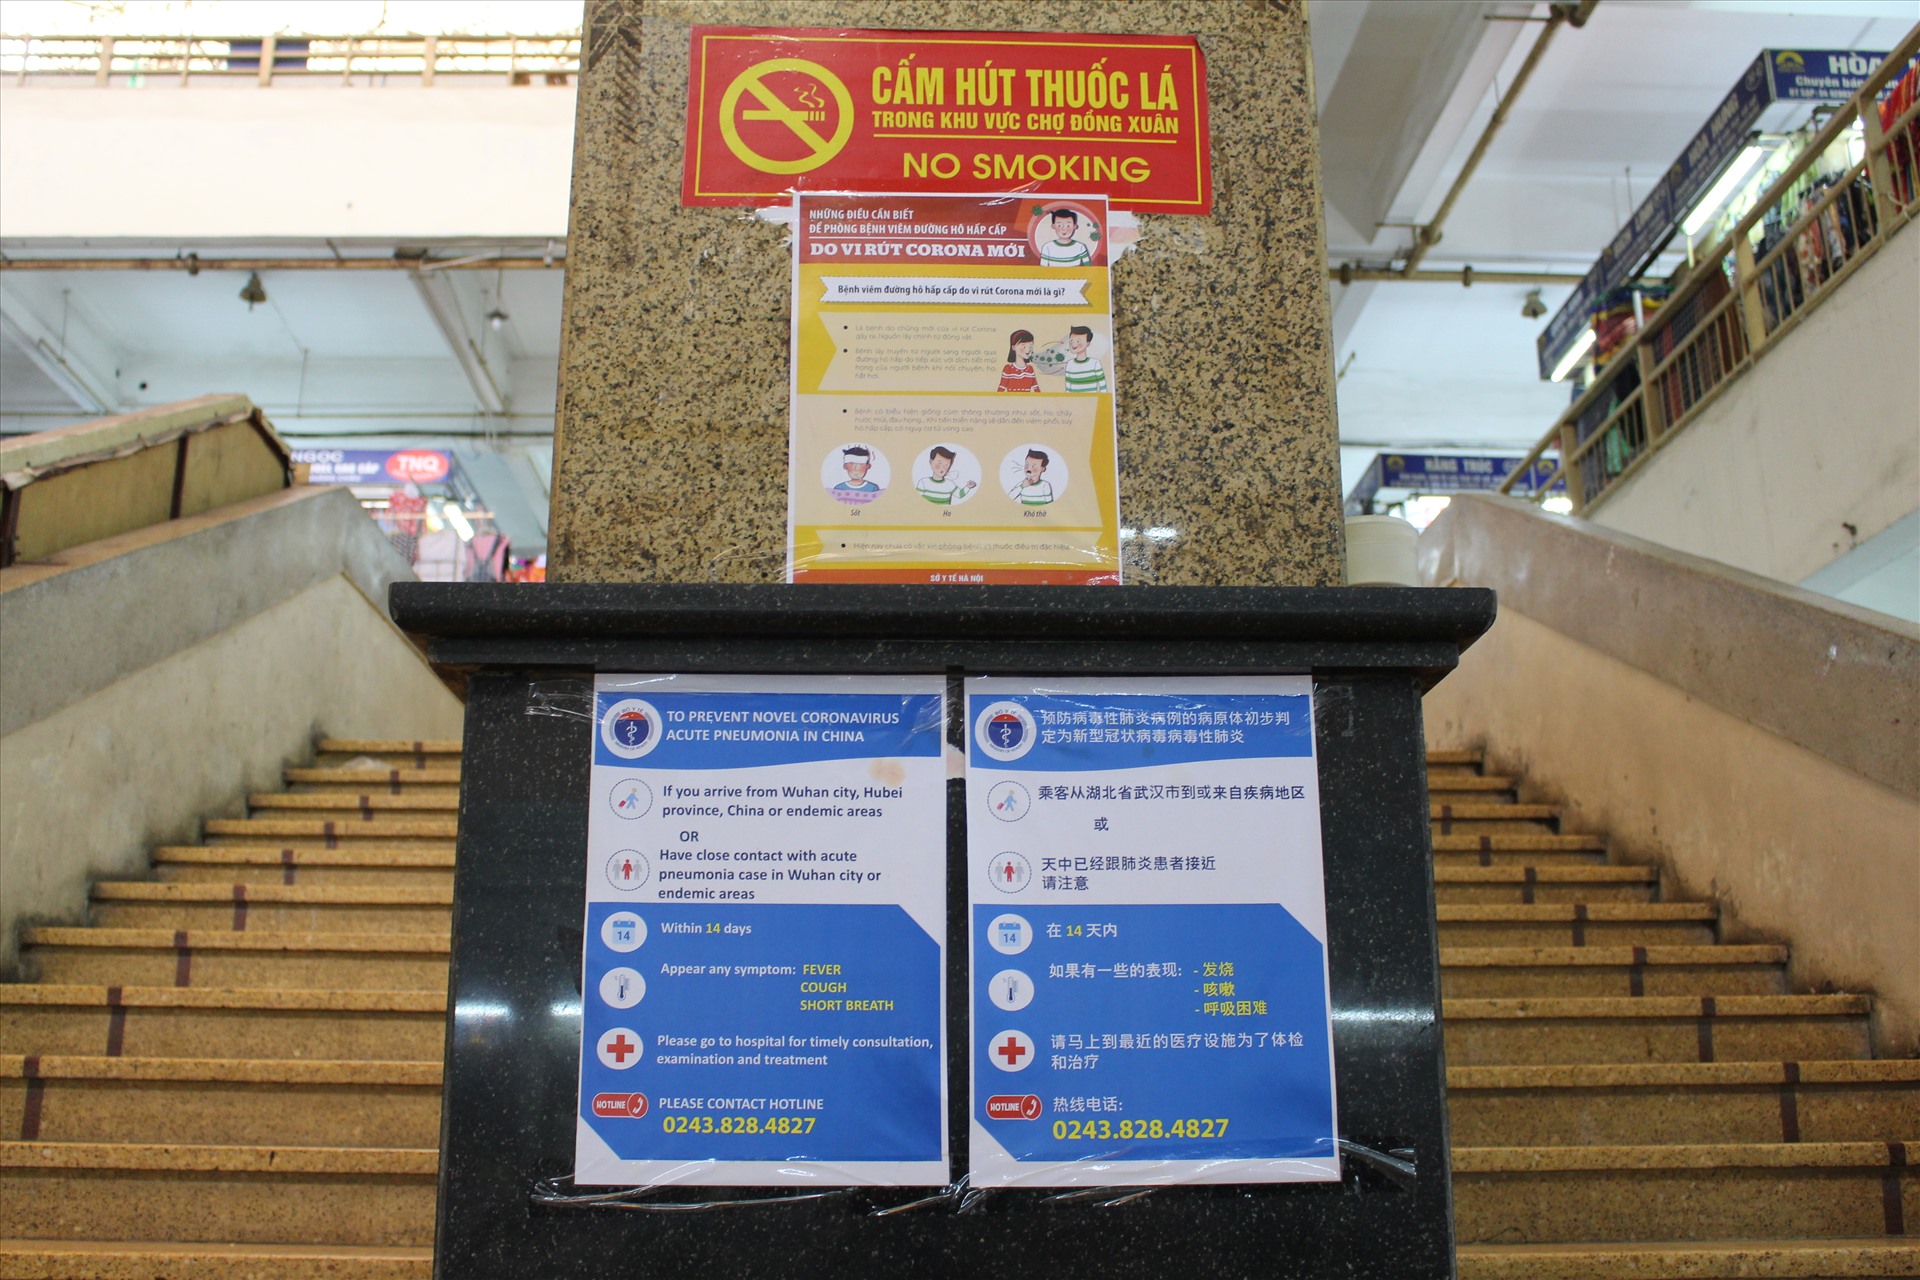 Các hướng dẫn về cách rửa tay và đeo khẩu trang đúng cách (cả Tiếng Anh và Tiếng Trung ) được dán tại các cầu thang trong khu chợ với hy vọng đẩy lùi bệnh để mang lại thu nhập ổn định cho các tiểu thương.